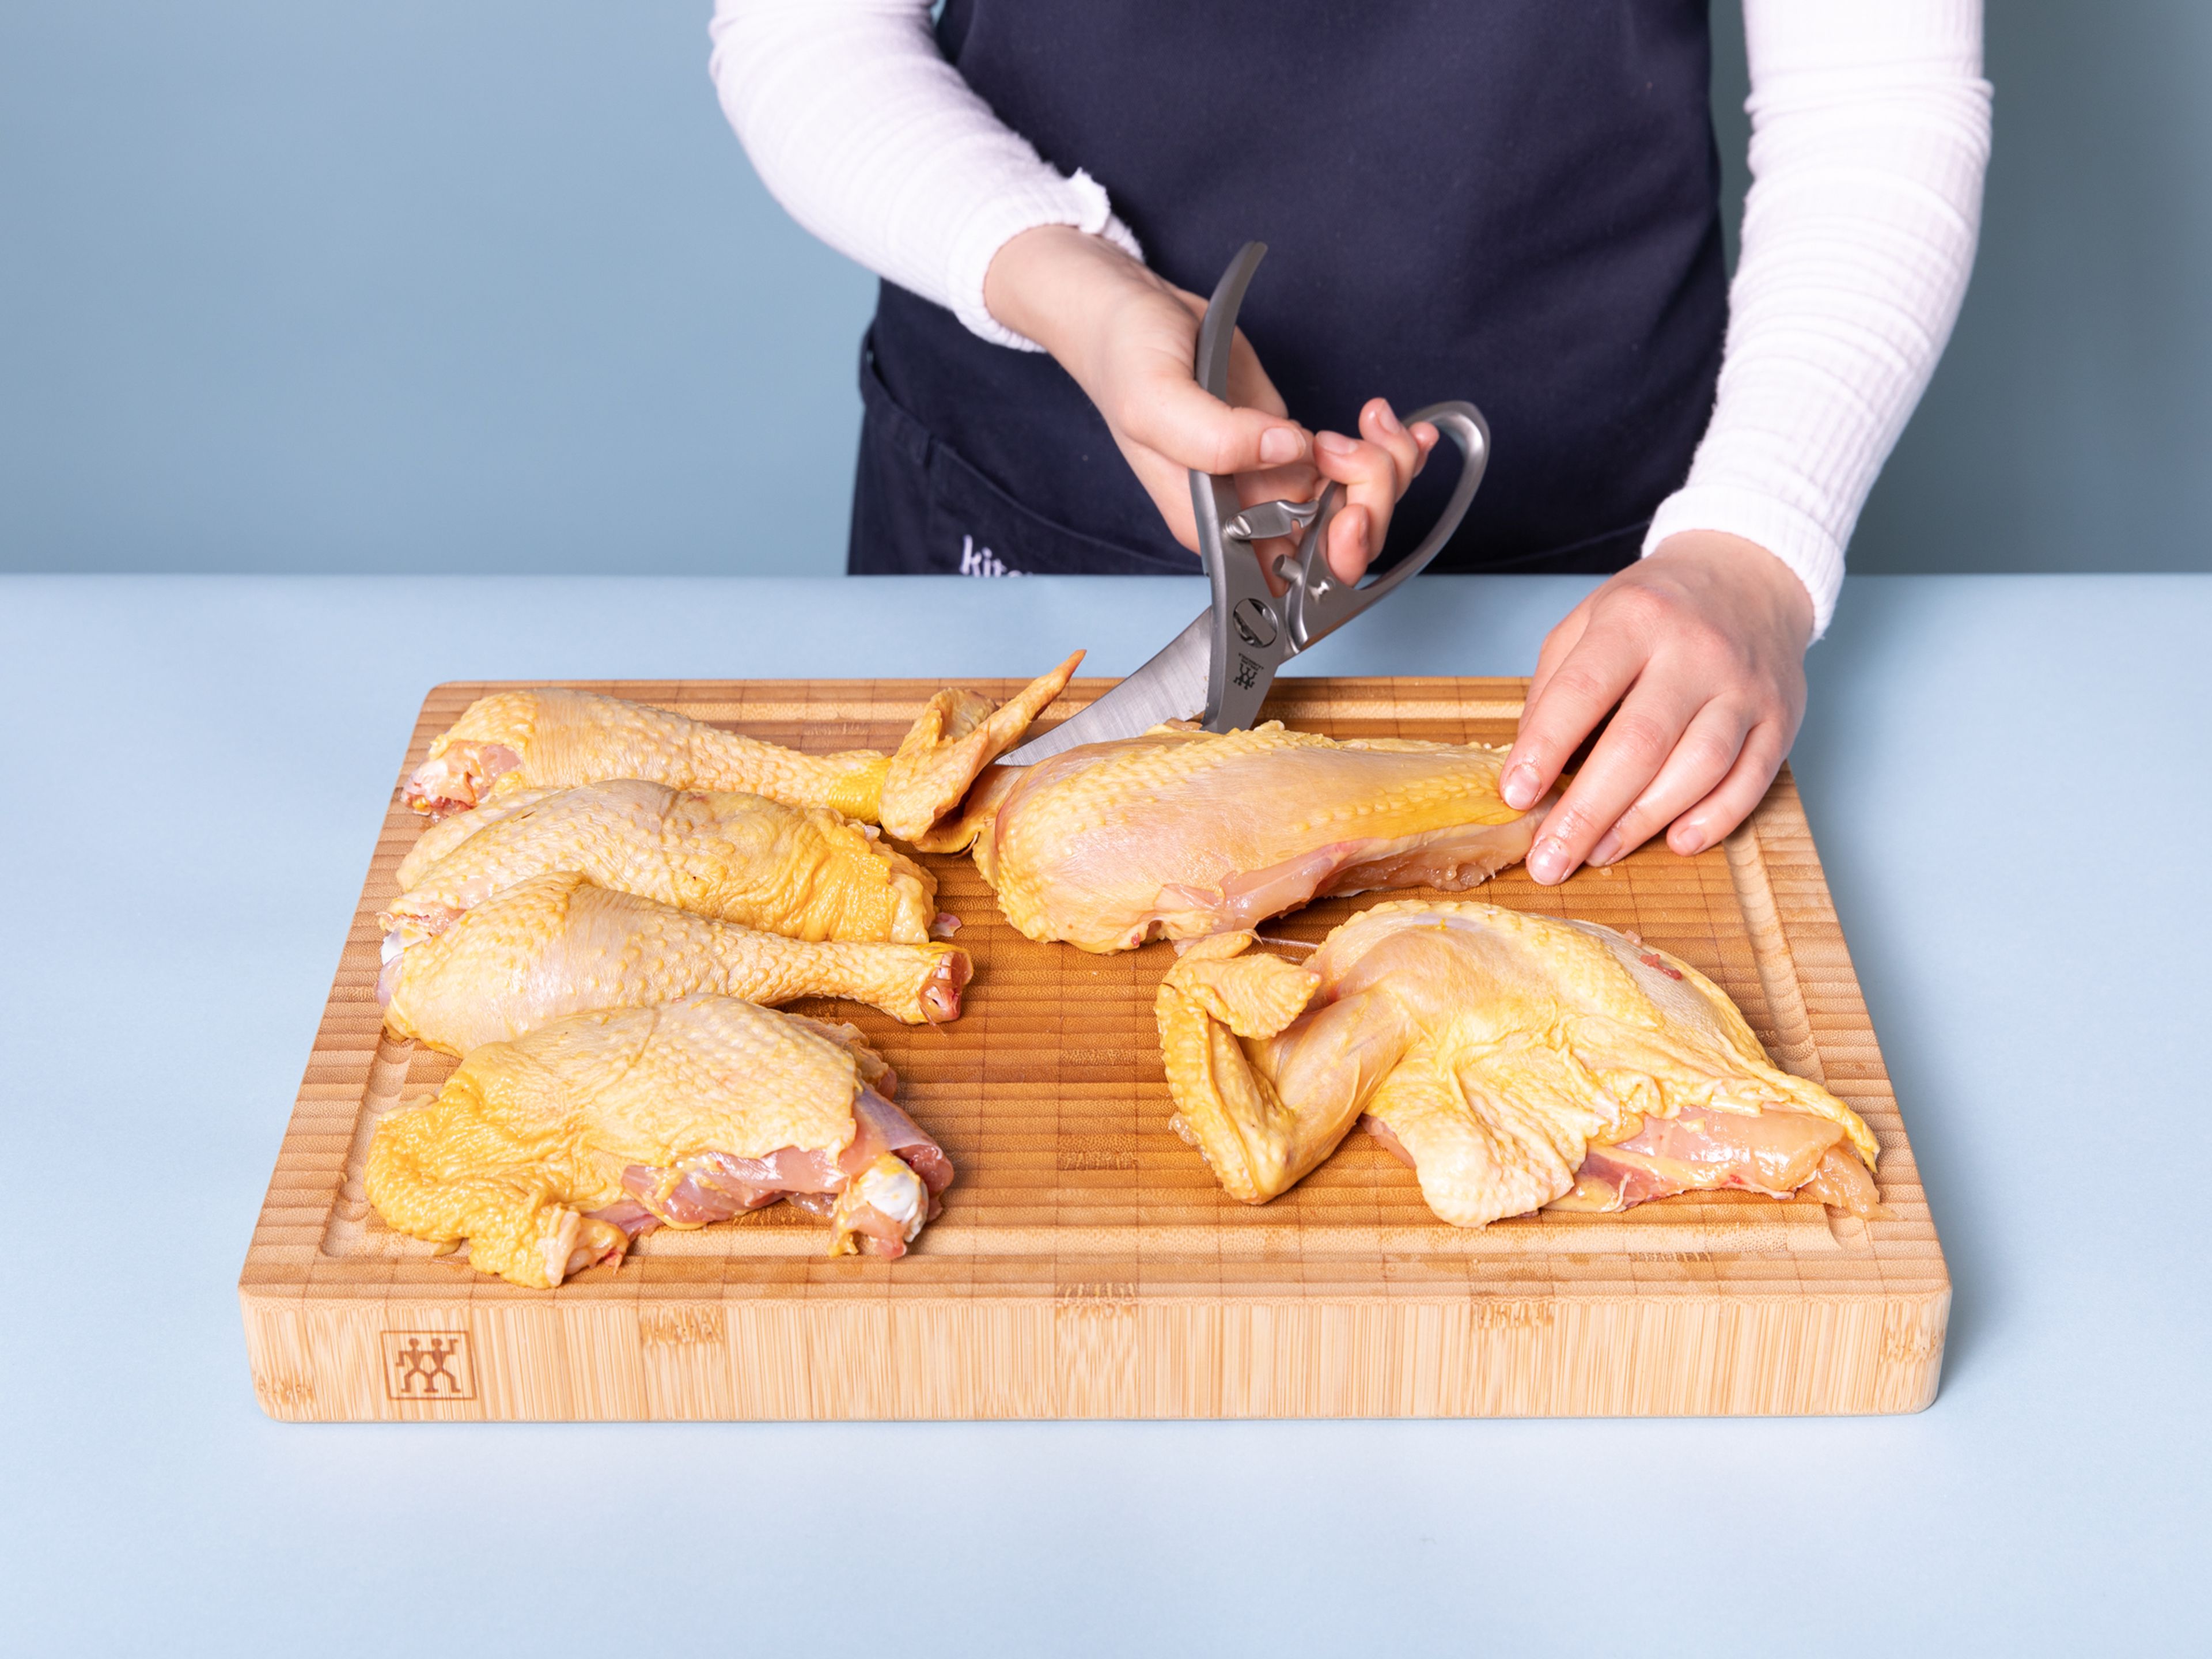 Den Ofen auf auf 200°C vorheizen. Das Huhn mit einer Geflügelschere zerteilen. Hierfür zuerst auf beiden Seiten der Wirbelsäule und dann durch das Brustbein schneiden. Nun die Brust und Beine trennen, dann die Unterschenkel und Schenkel sowie Brust und Flügel. Von allen Seiten gut Salzen und beiseite stellen.